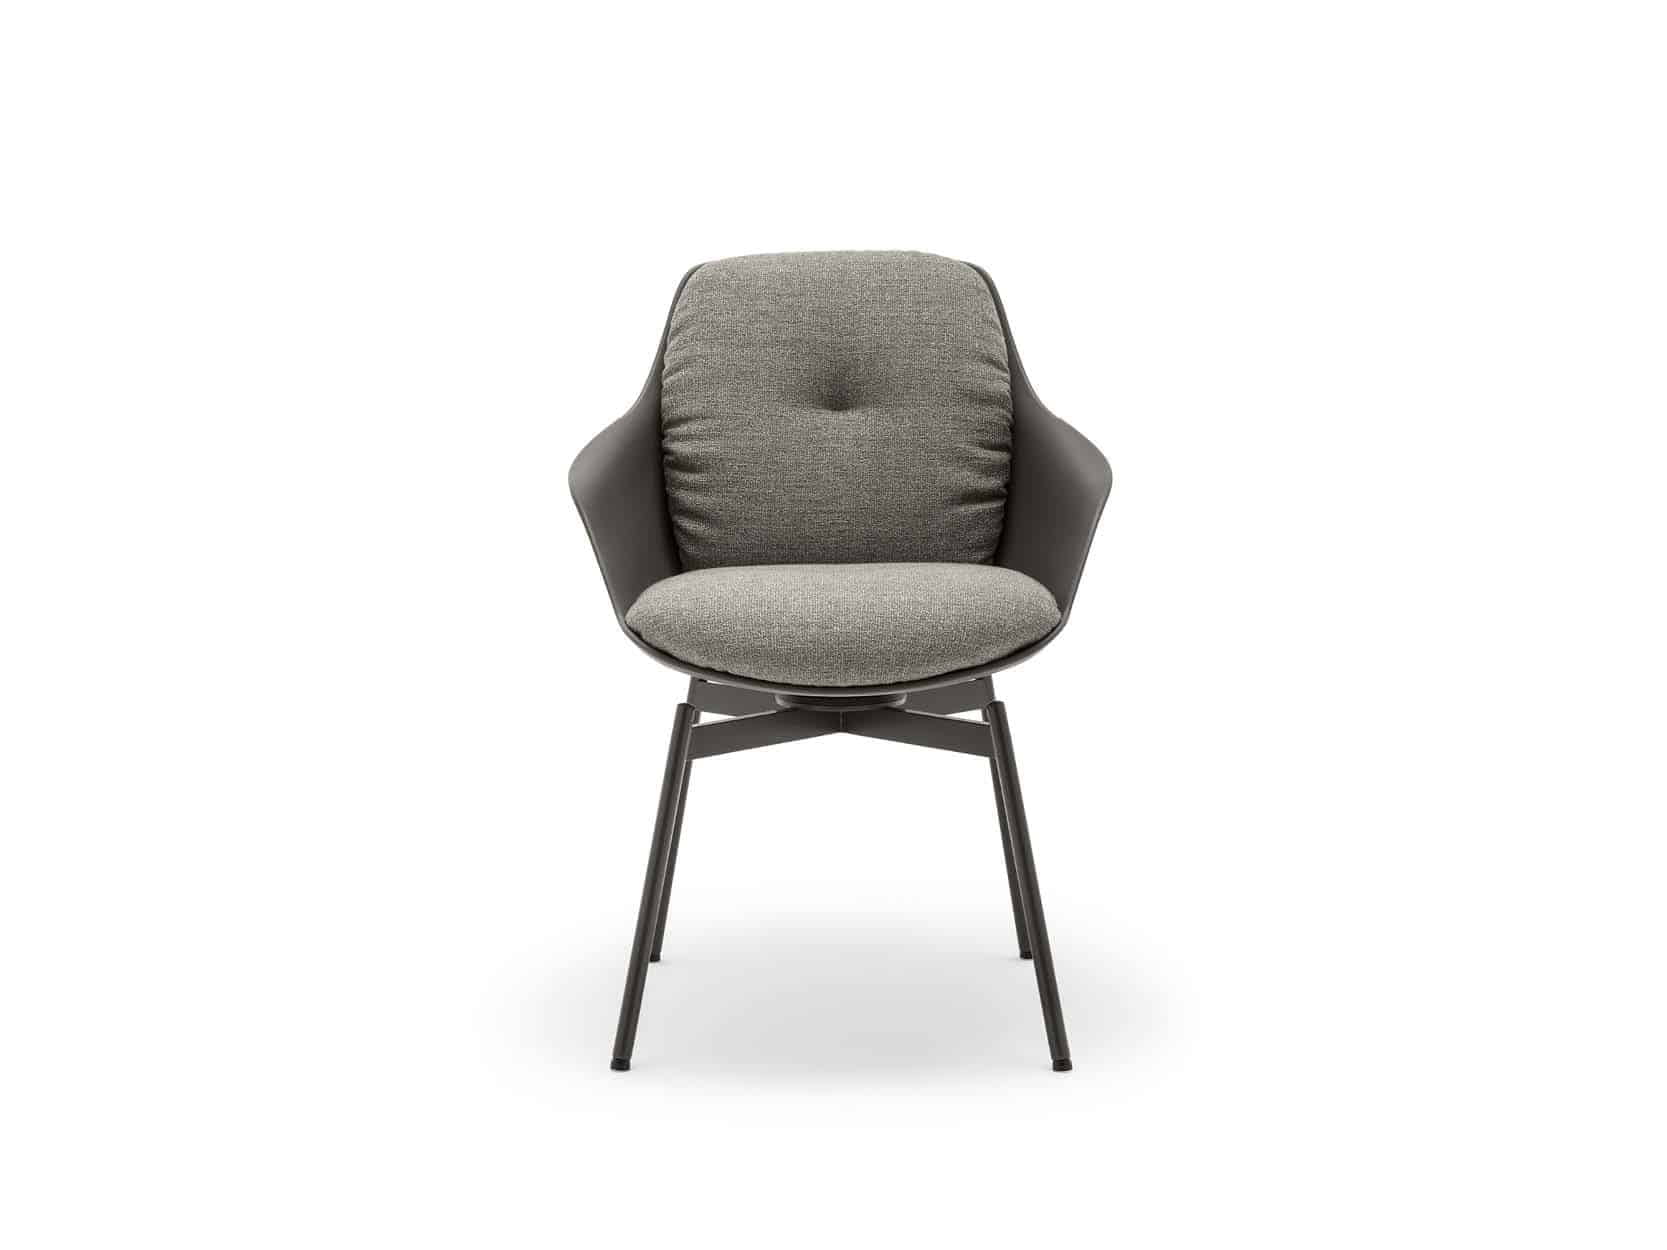 Rolf 600 stoel | Van Donk interieur